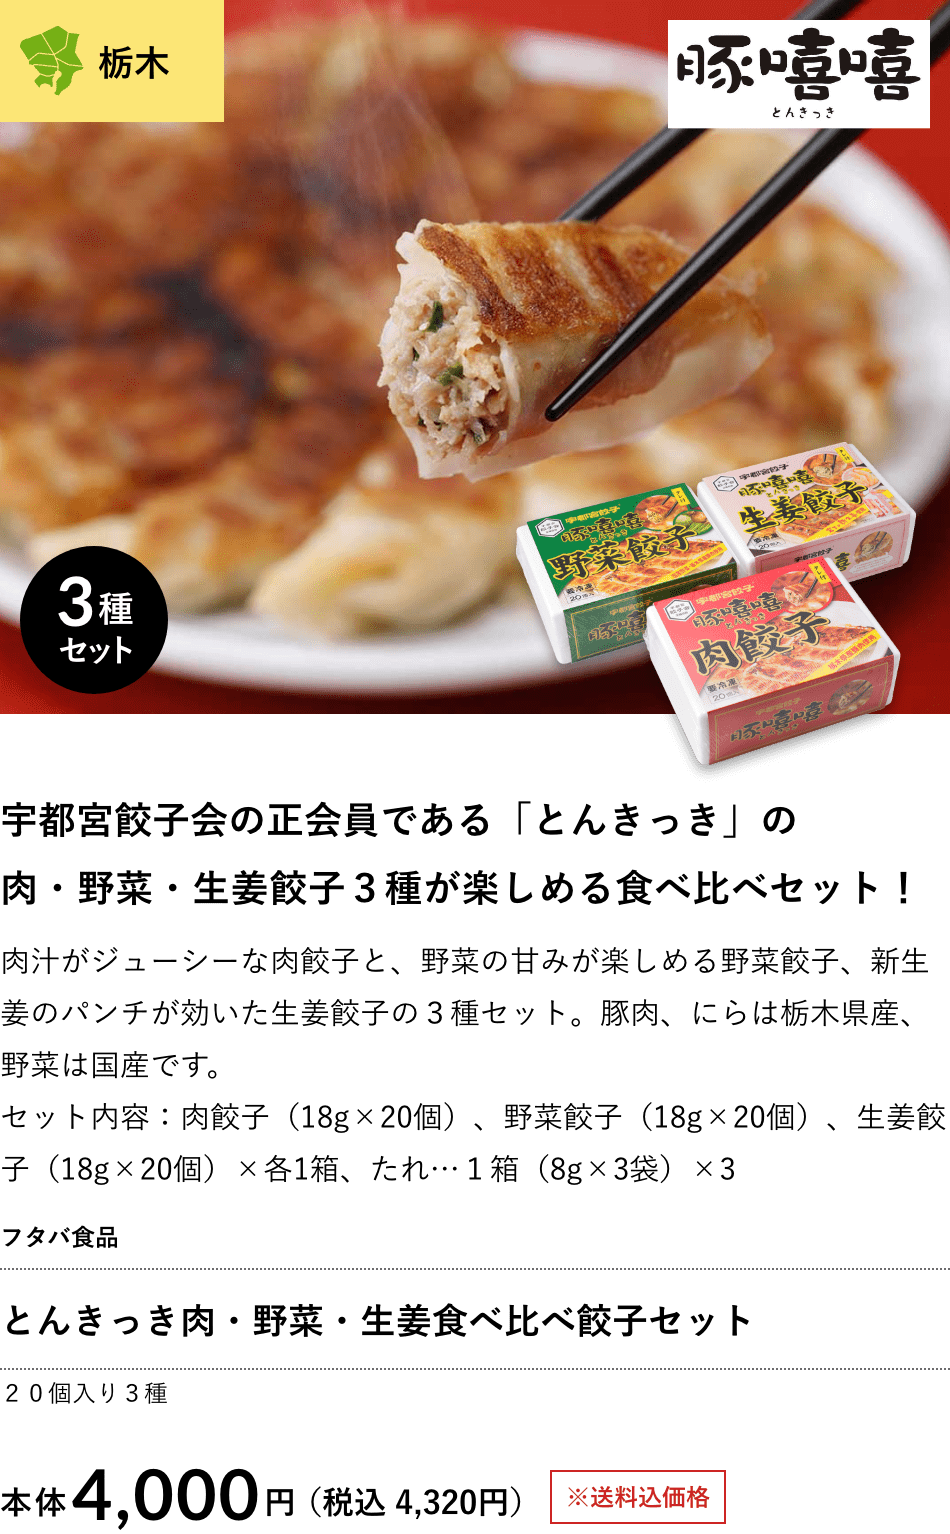 とんきっき肉・野菜・生姜食べ比べ餃子セット